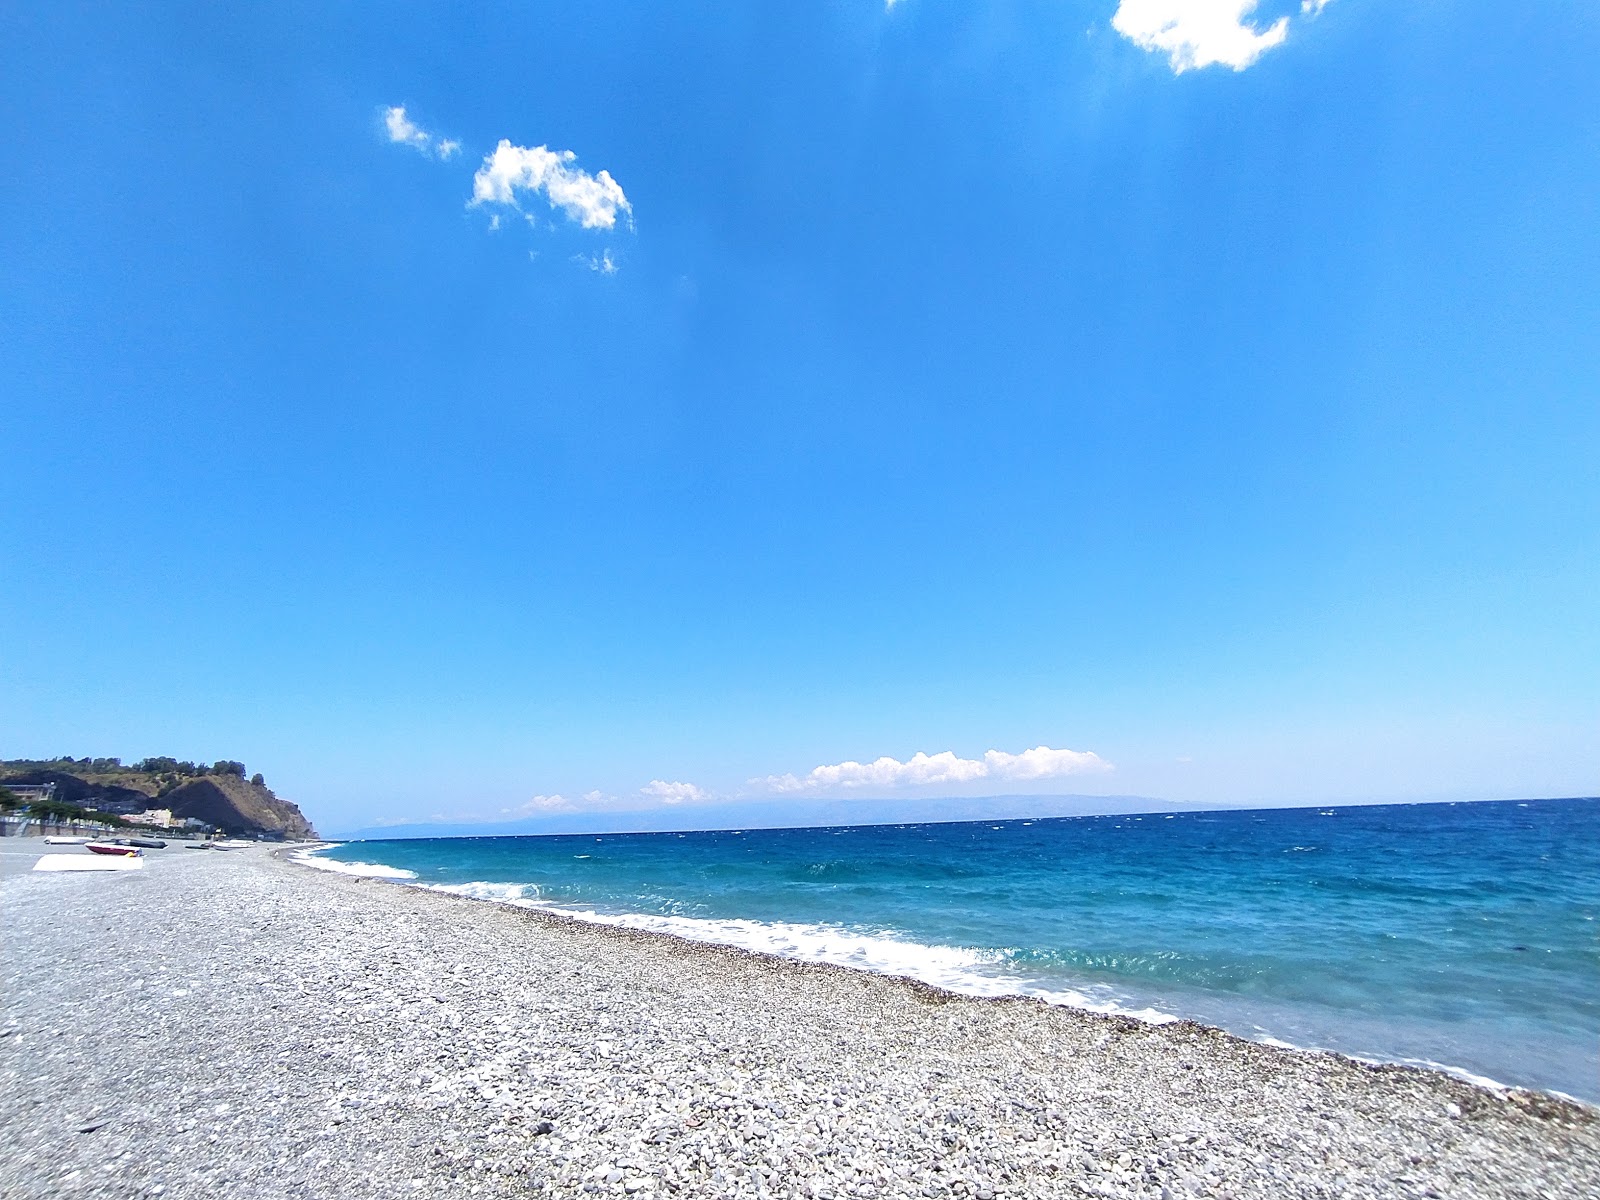 Zdjęcie Ali Terme beach obszar udogodnień